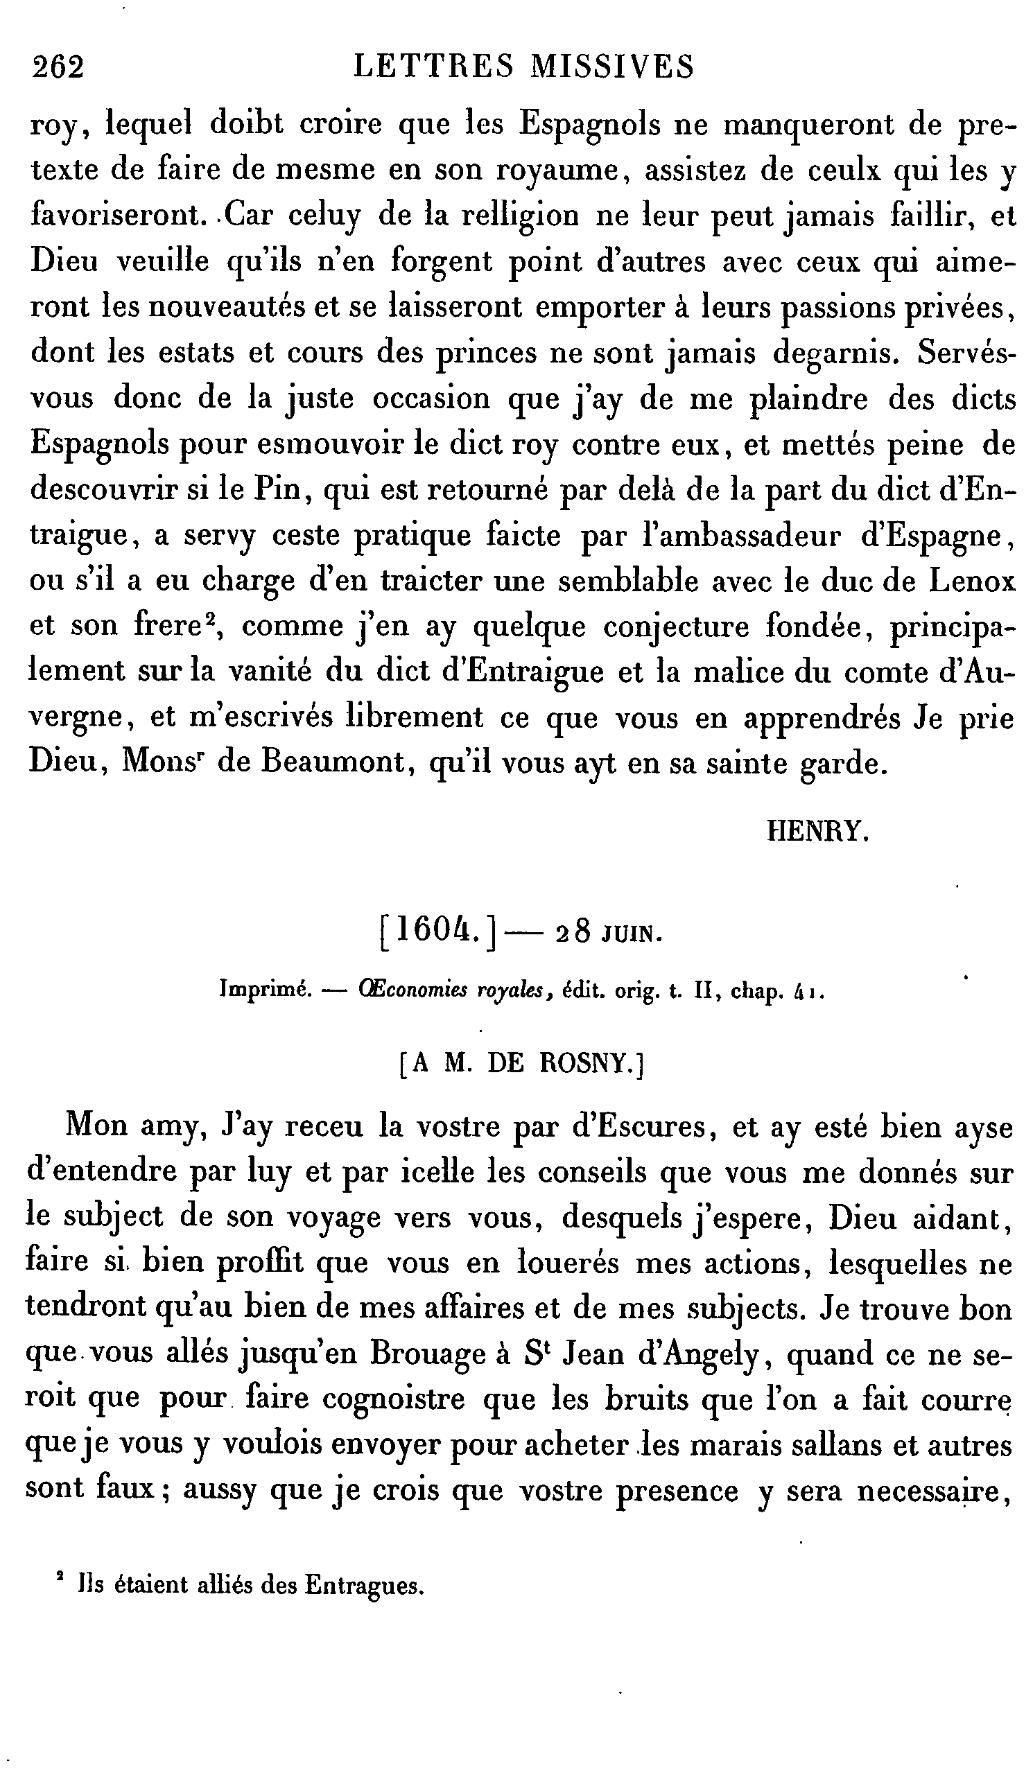 Page Henri Iv Lettres Missives Tome6 Djvu 274 Wikisource